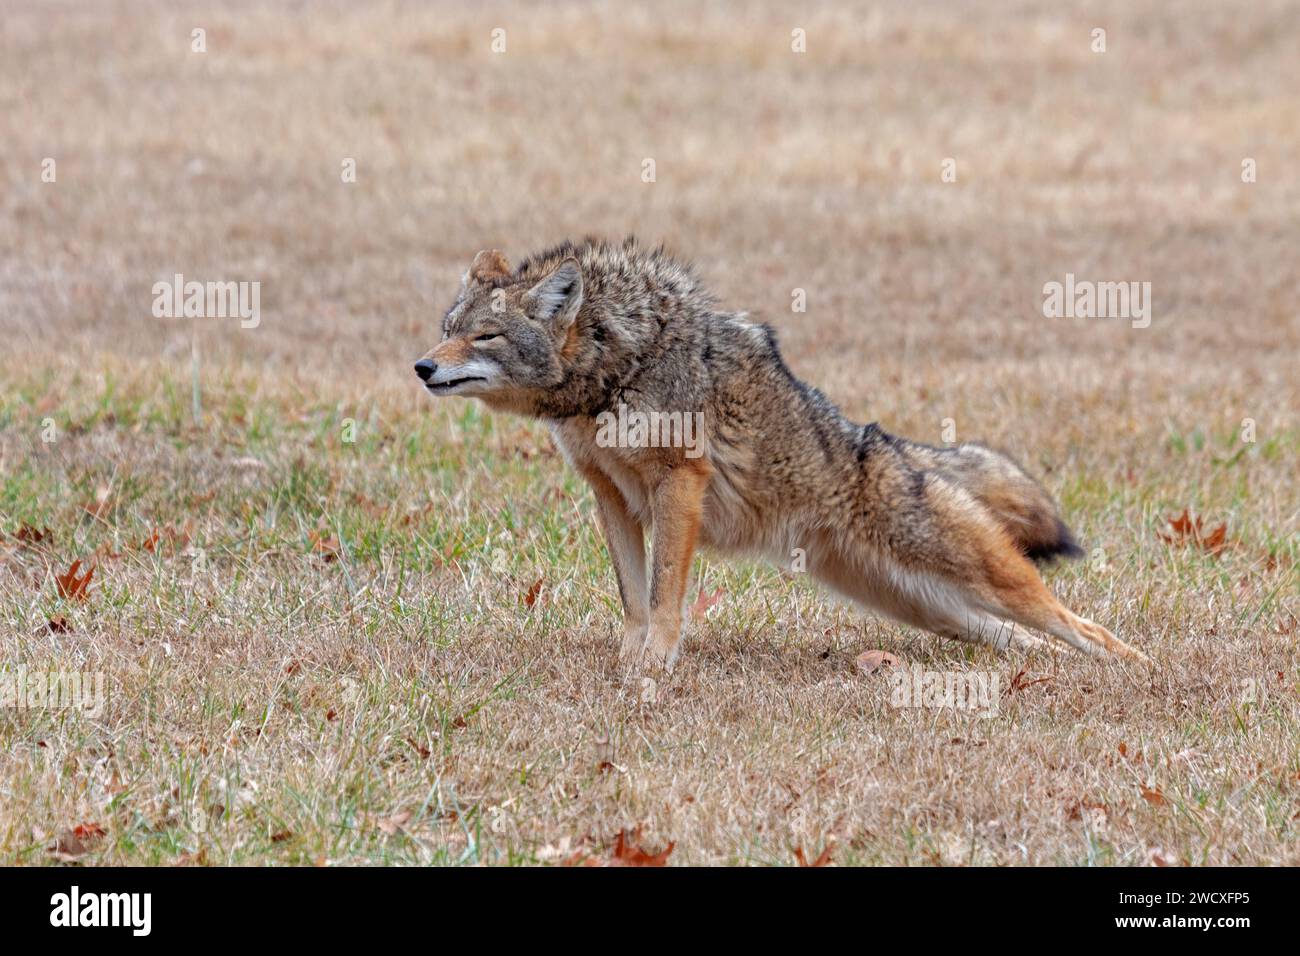 Un coyote s'étend dans une prairie ouverte. Ses pattes avant sont vers le haut, son extrémité arrière vers le bas, comme dans une position de yoga de pose de planche. Banque D'Images